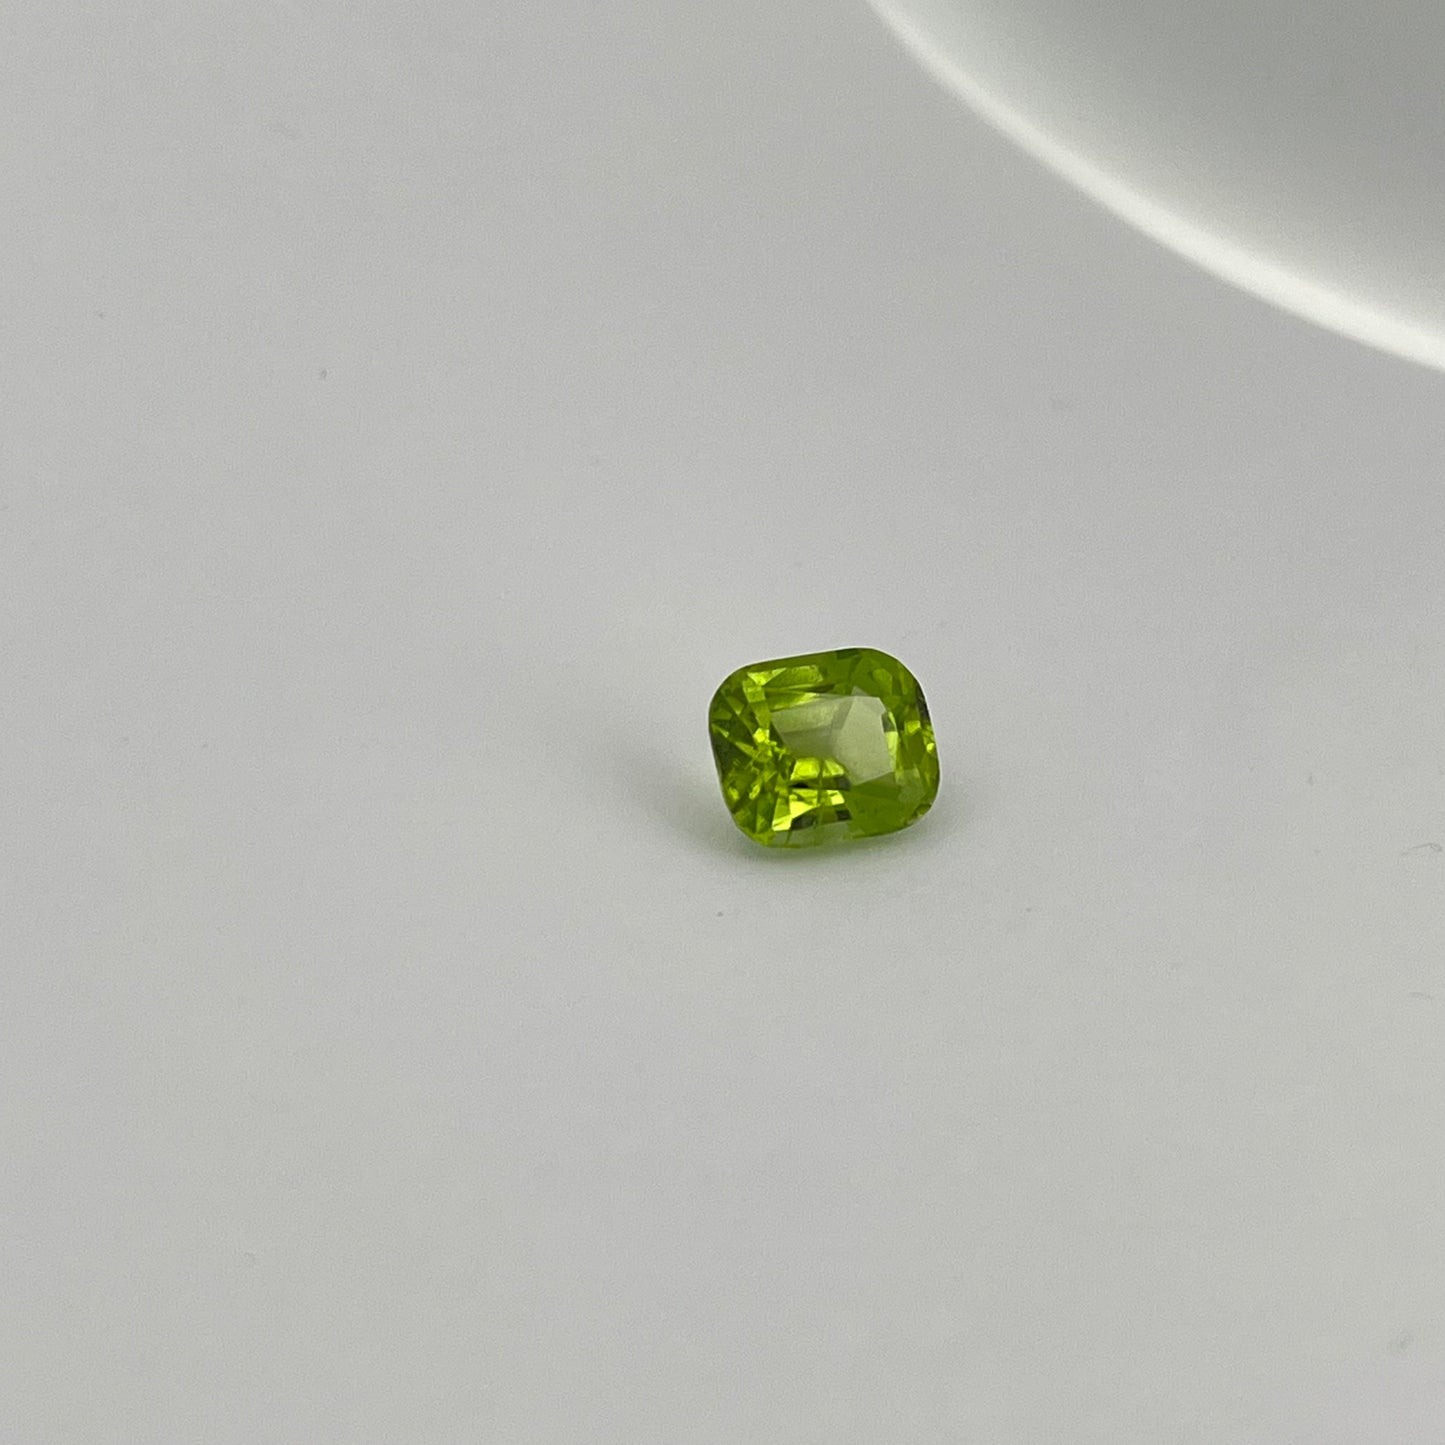 2.1ct Peridot/ Emerald cut